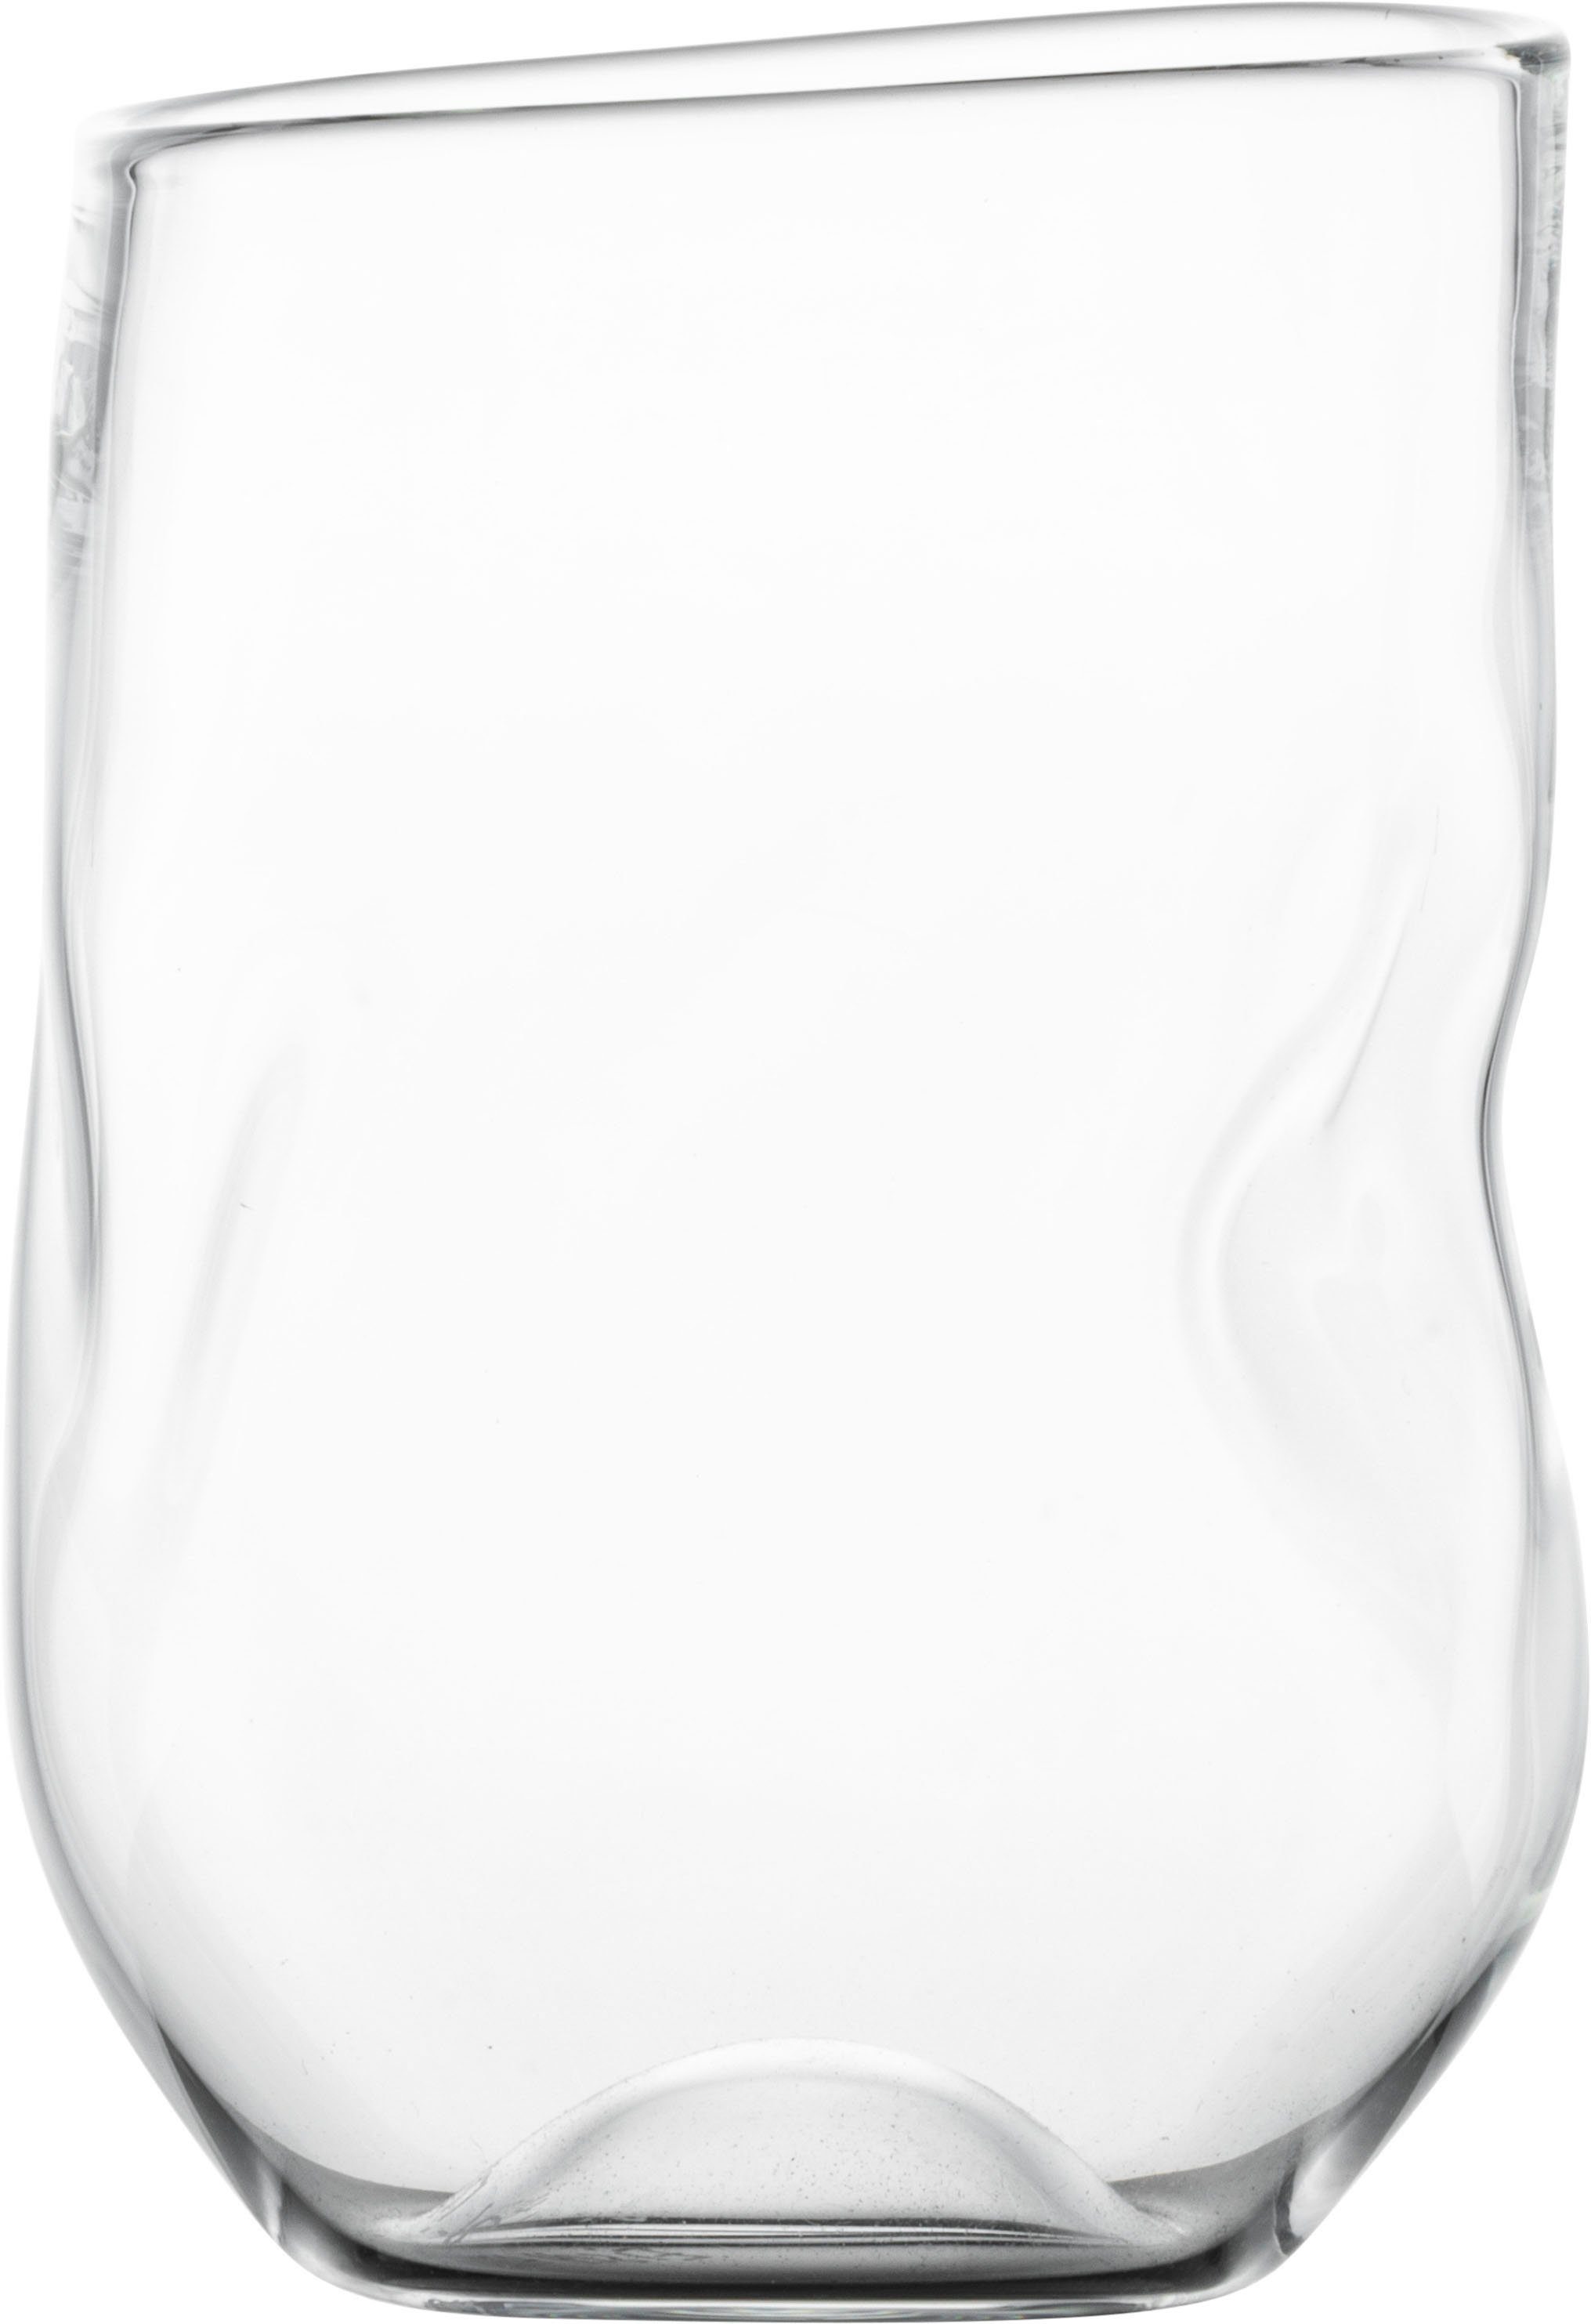 Eisch Becher UNIK, Borosilikatglas, Allroundbecher, hitzebeständig, 2-teilig,  300 ml, 2 EISCH Allround-Becher UNIK sind in einer attraktiven  Geschenk-Röhre